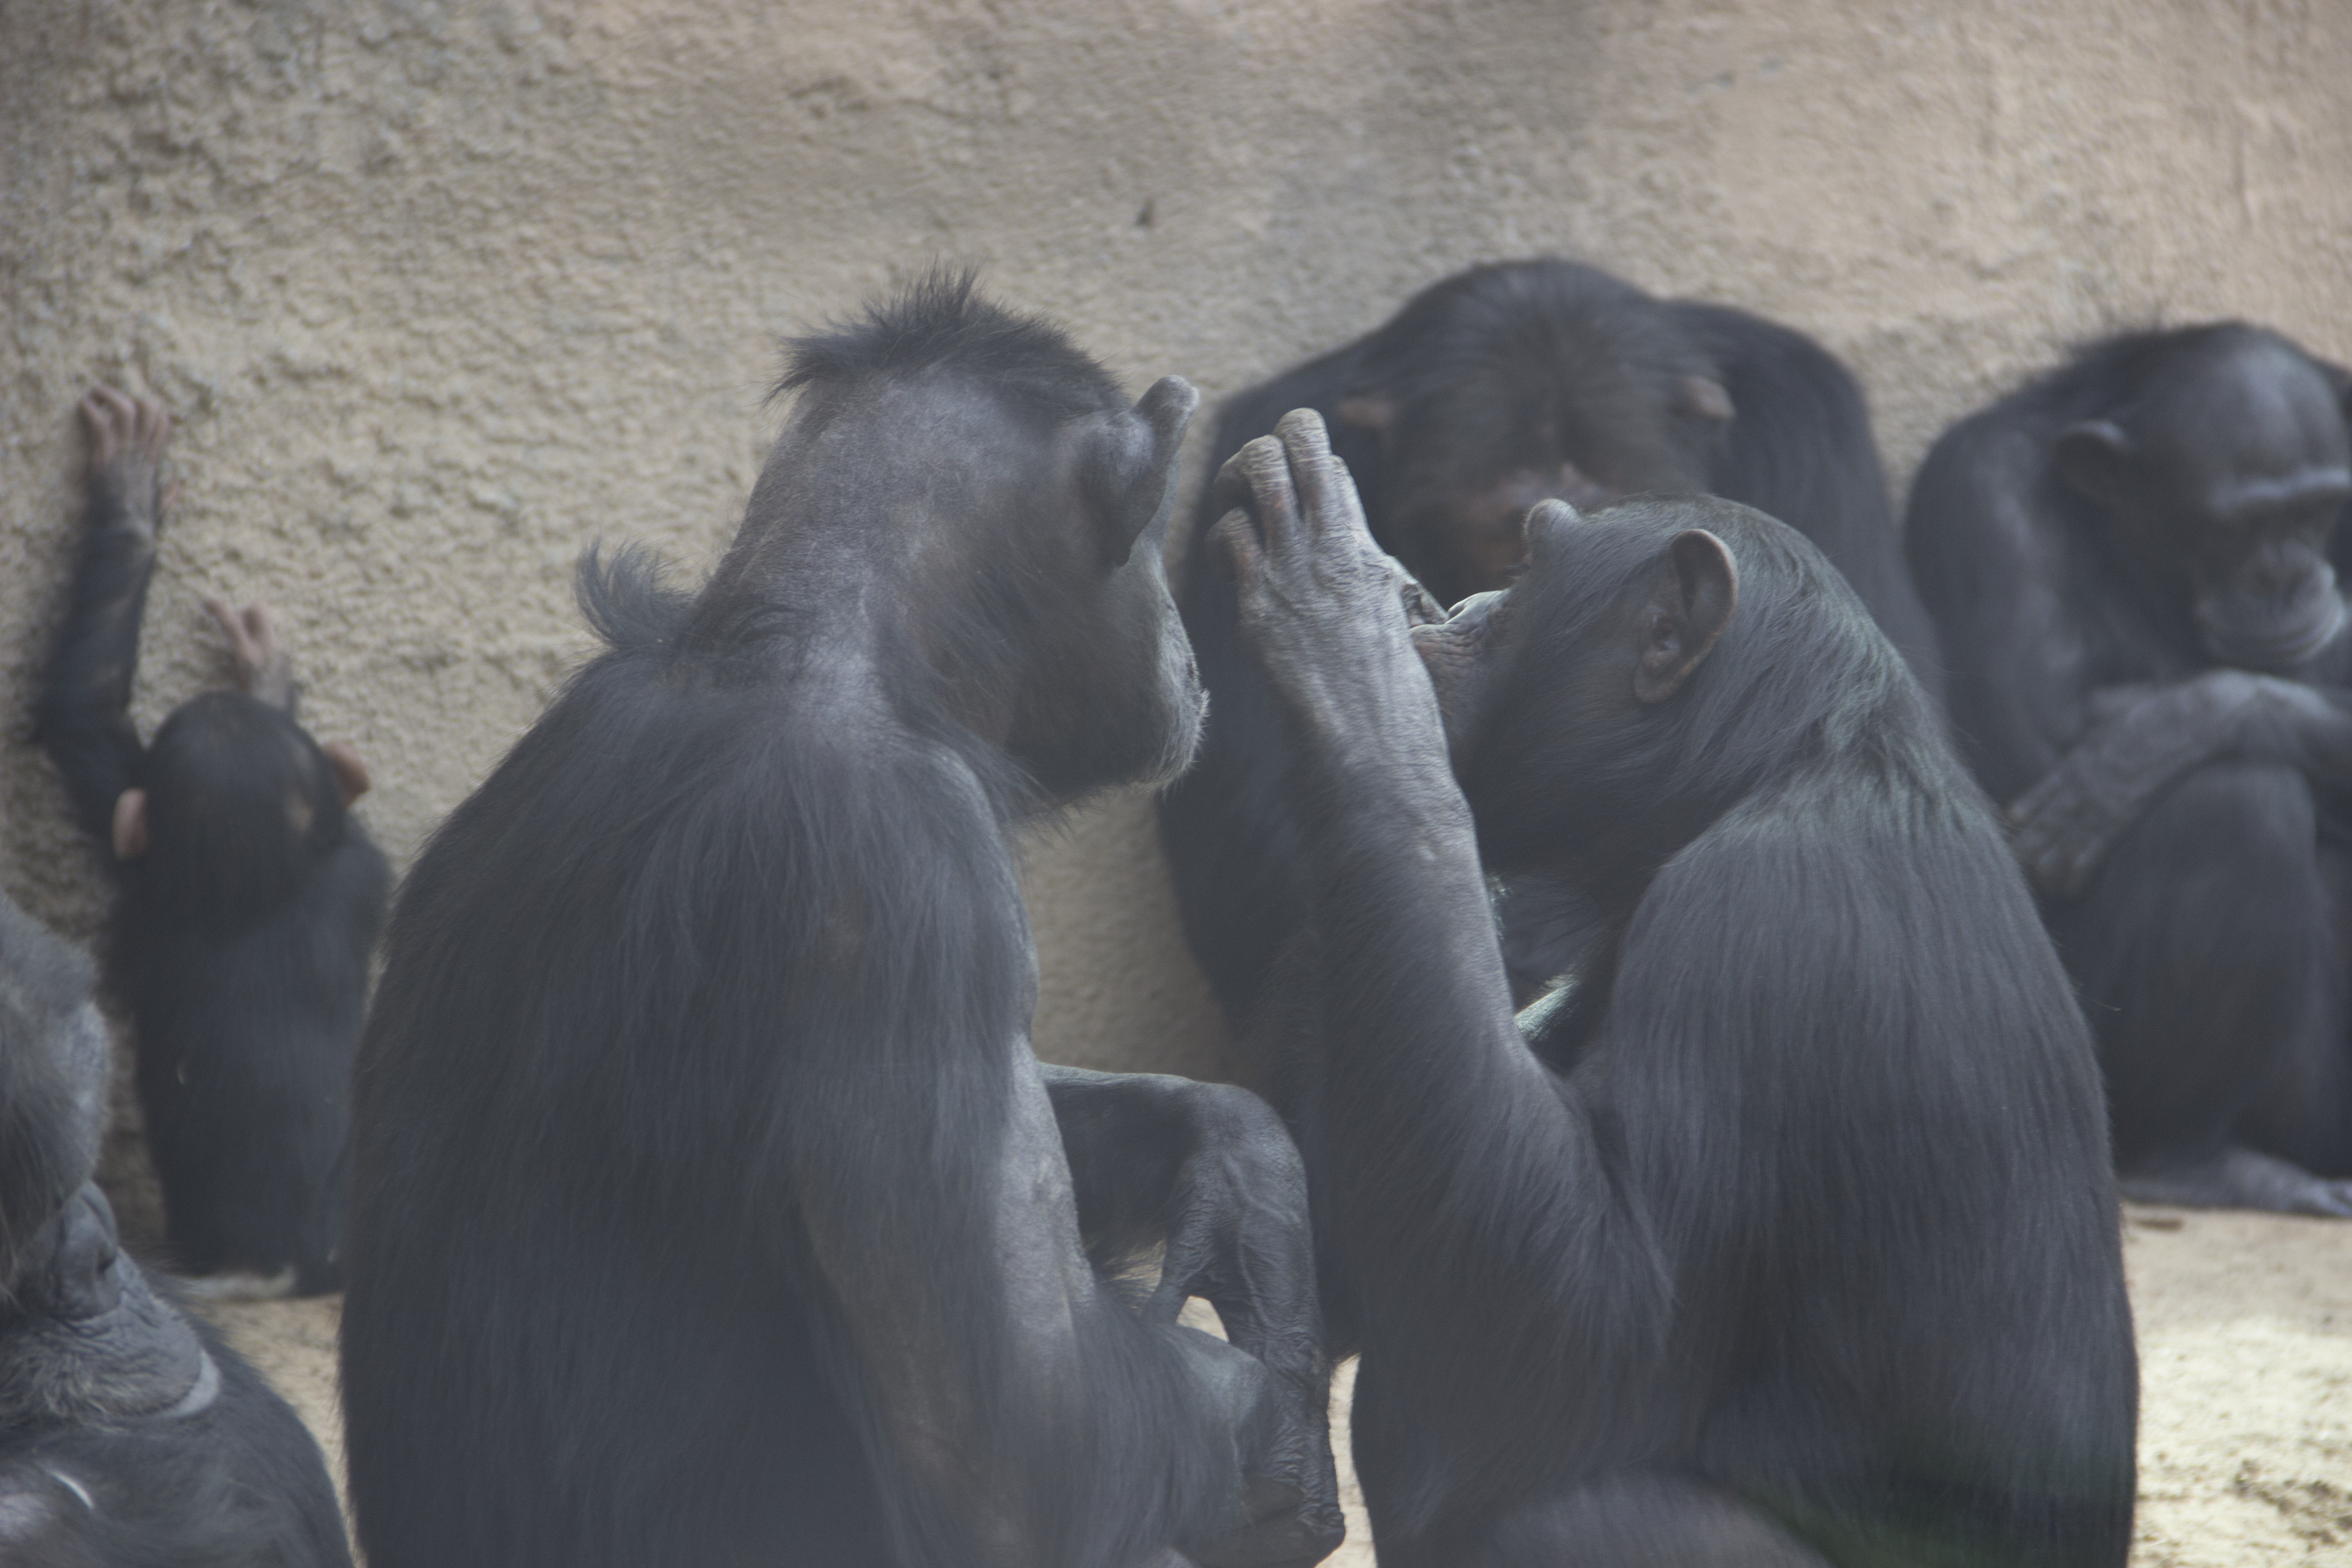 Chimps grooming